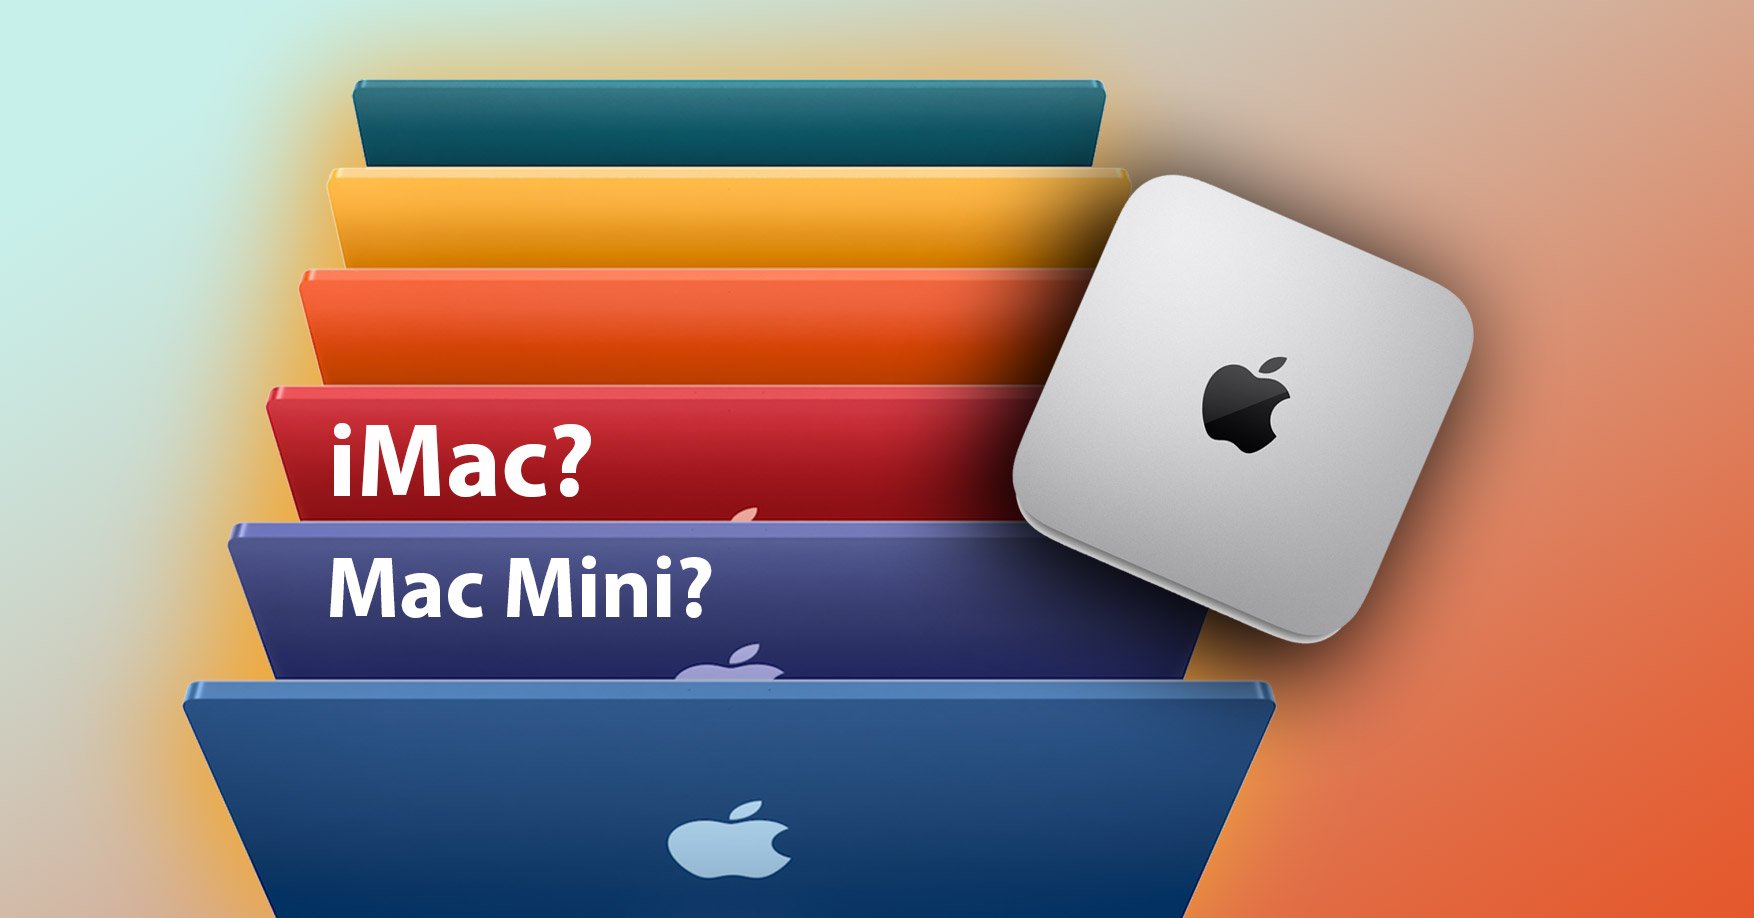 Thay vì mua iMac, mua Mac Mini + màn hình 4K thì có tiết kiện tiền hơn không?